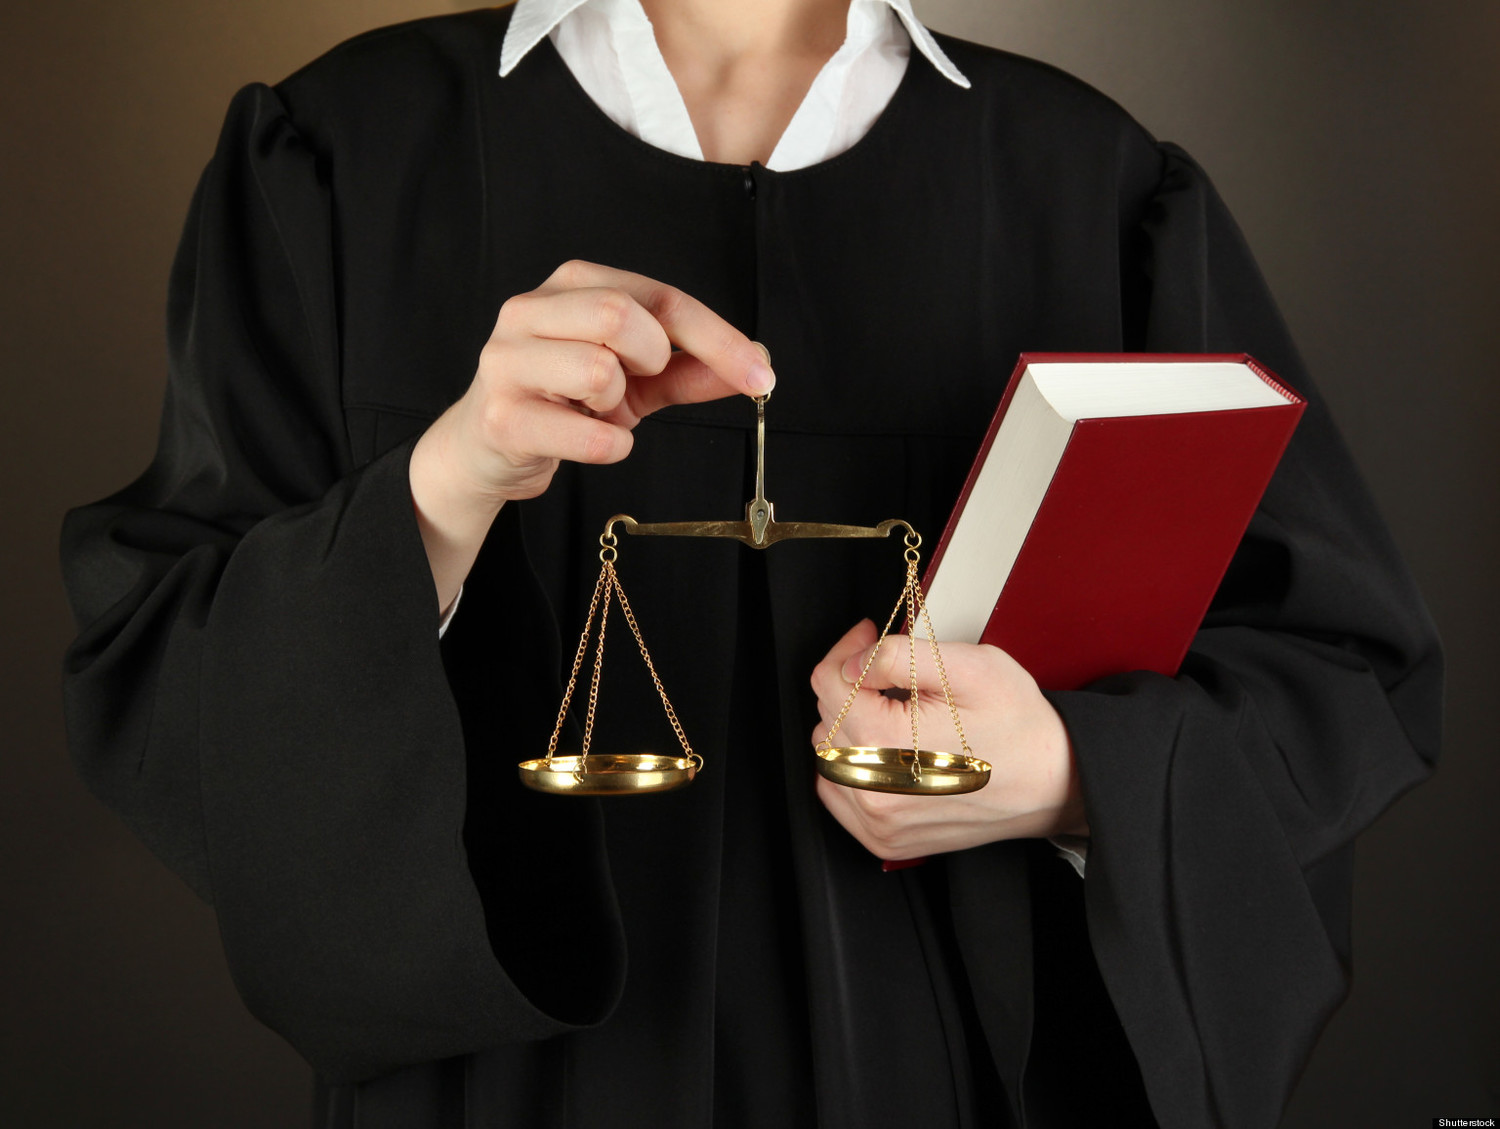 Узкая специализация арбитражных юристов